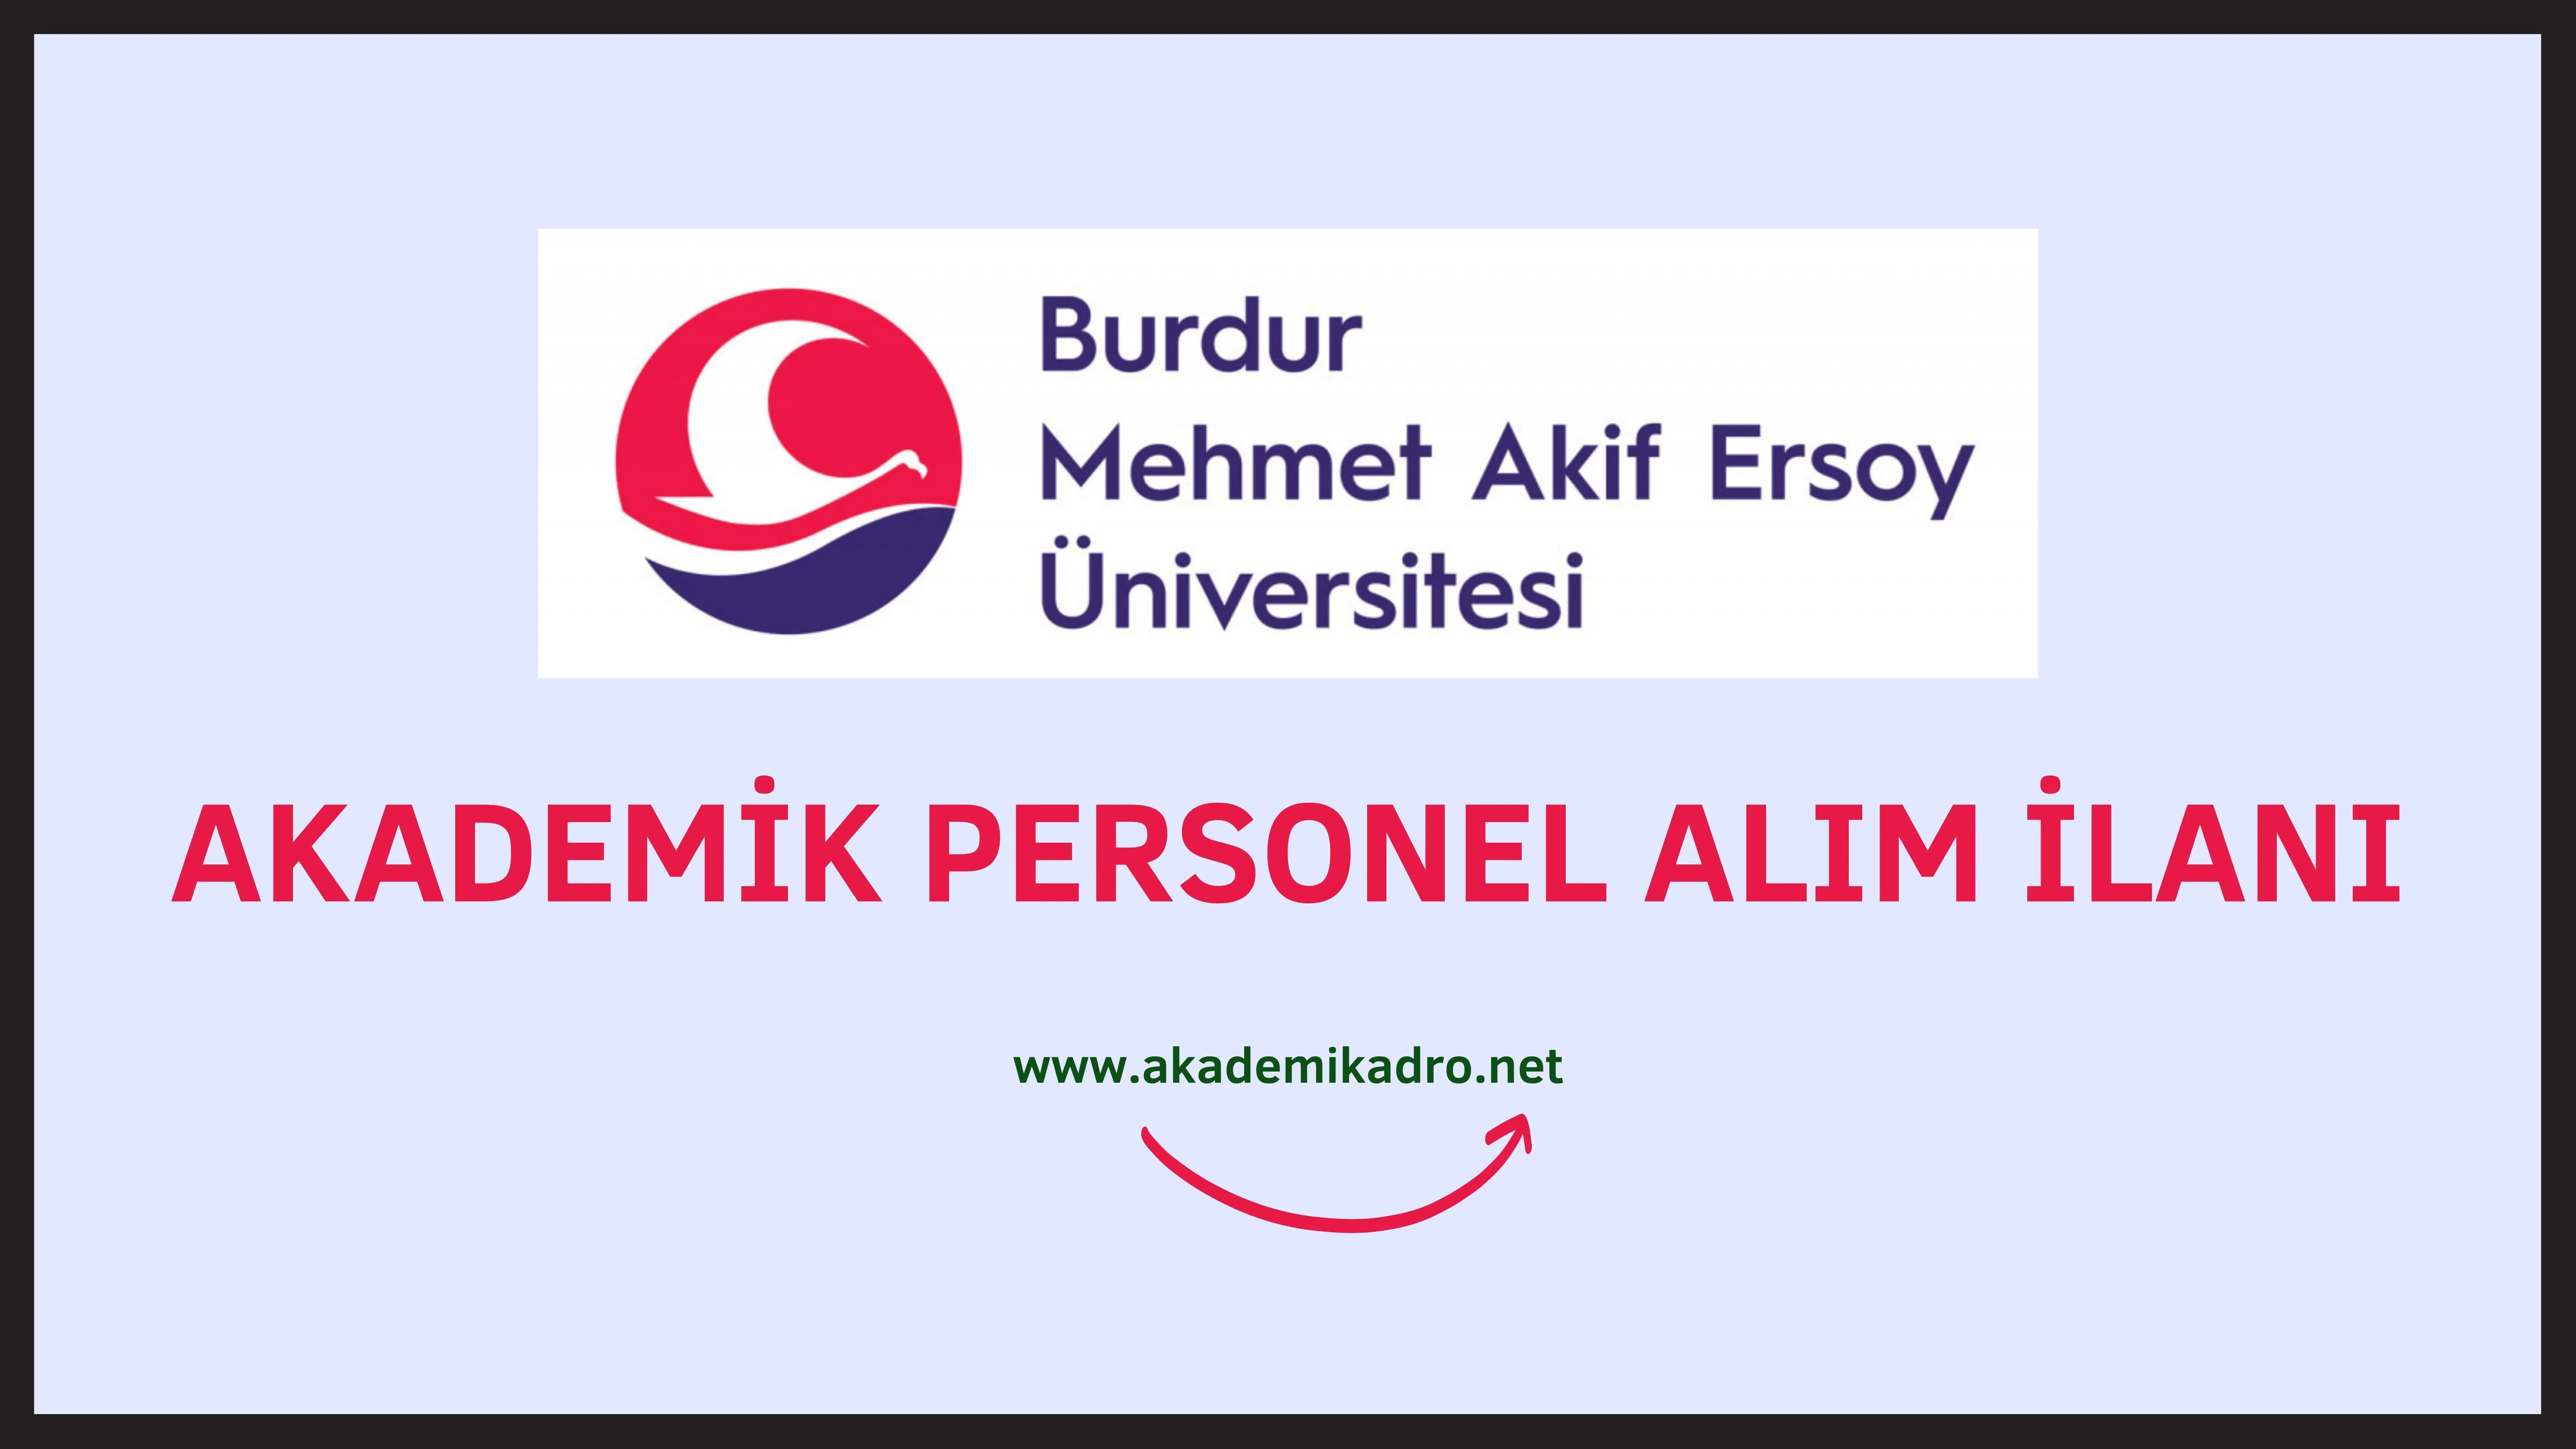 Burdur Mehmet Akif Ersoy Üniversitesi çeşitli alanlarda 8 akademik personel alacak.